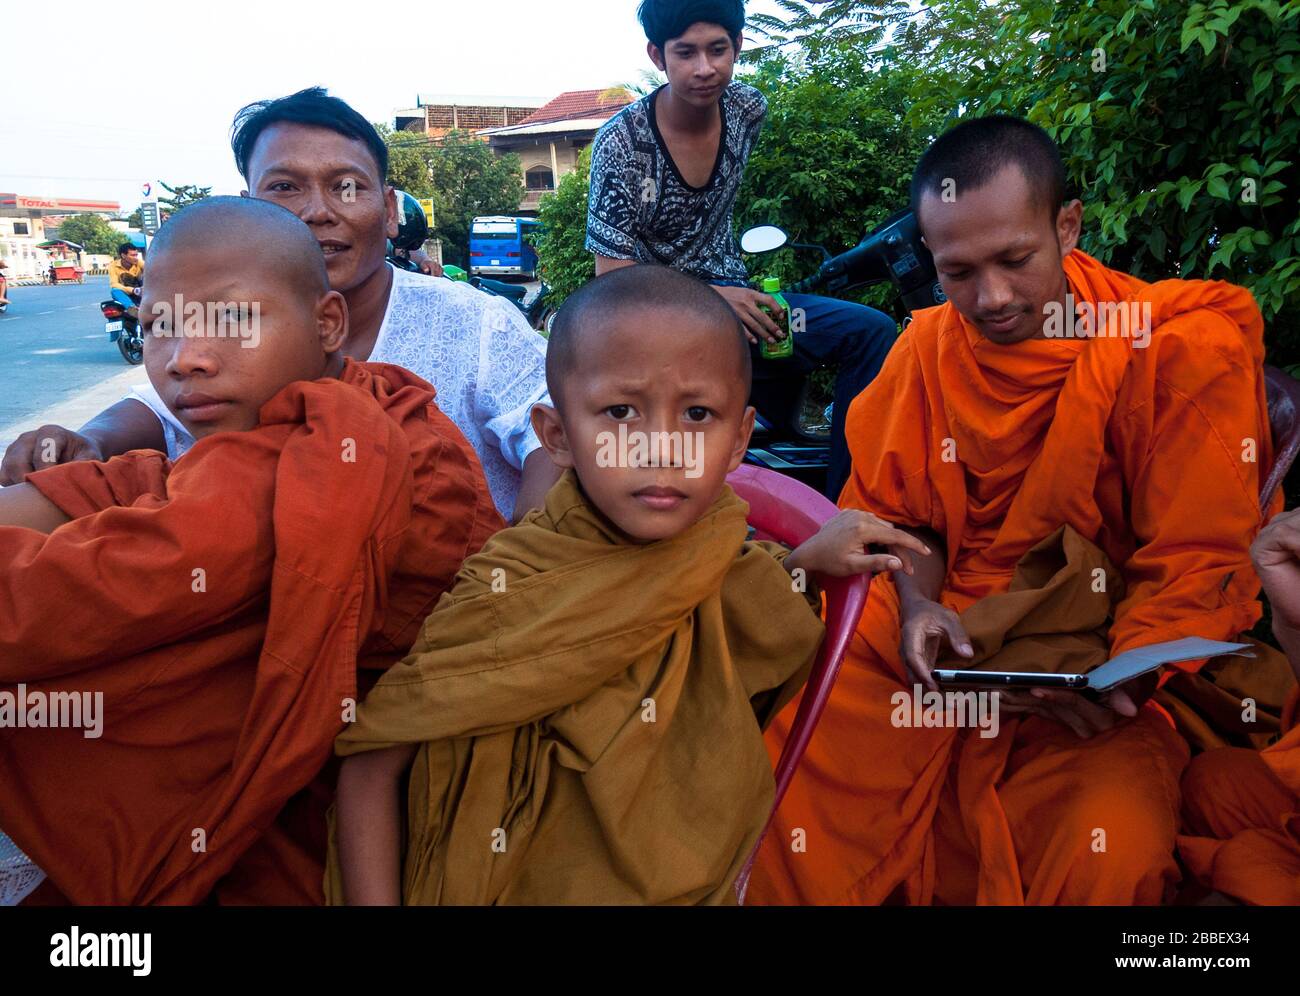 Kambot, Cambogia, Asia: Alcuni giovani studenti buddisti siedono in gruppo mentre giocano con un tablet Foto Stock